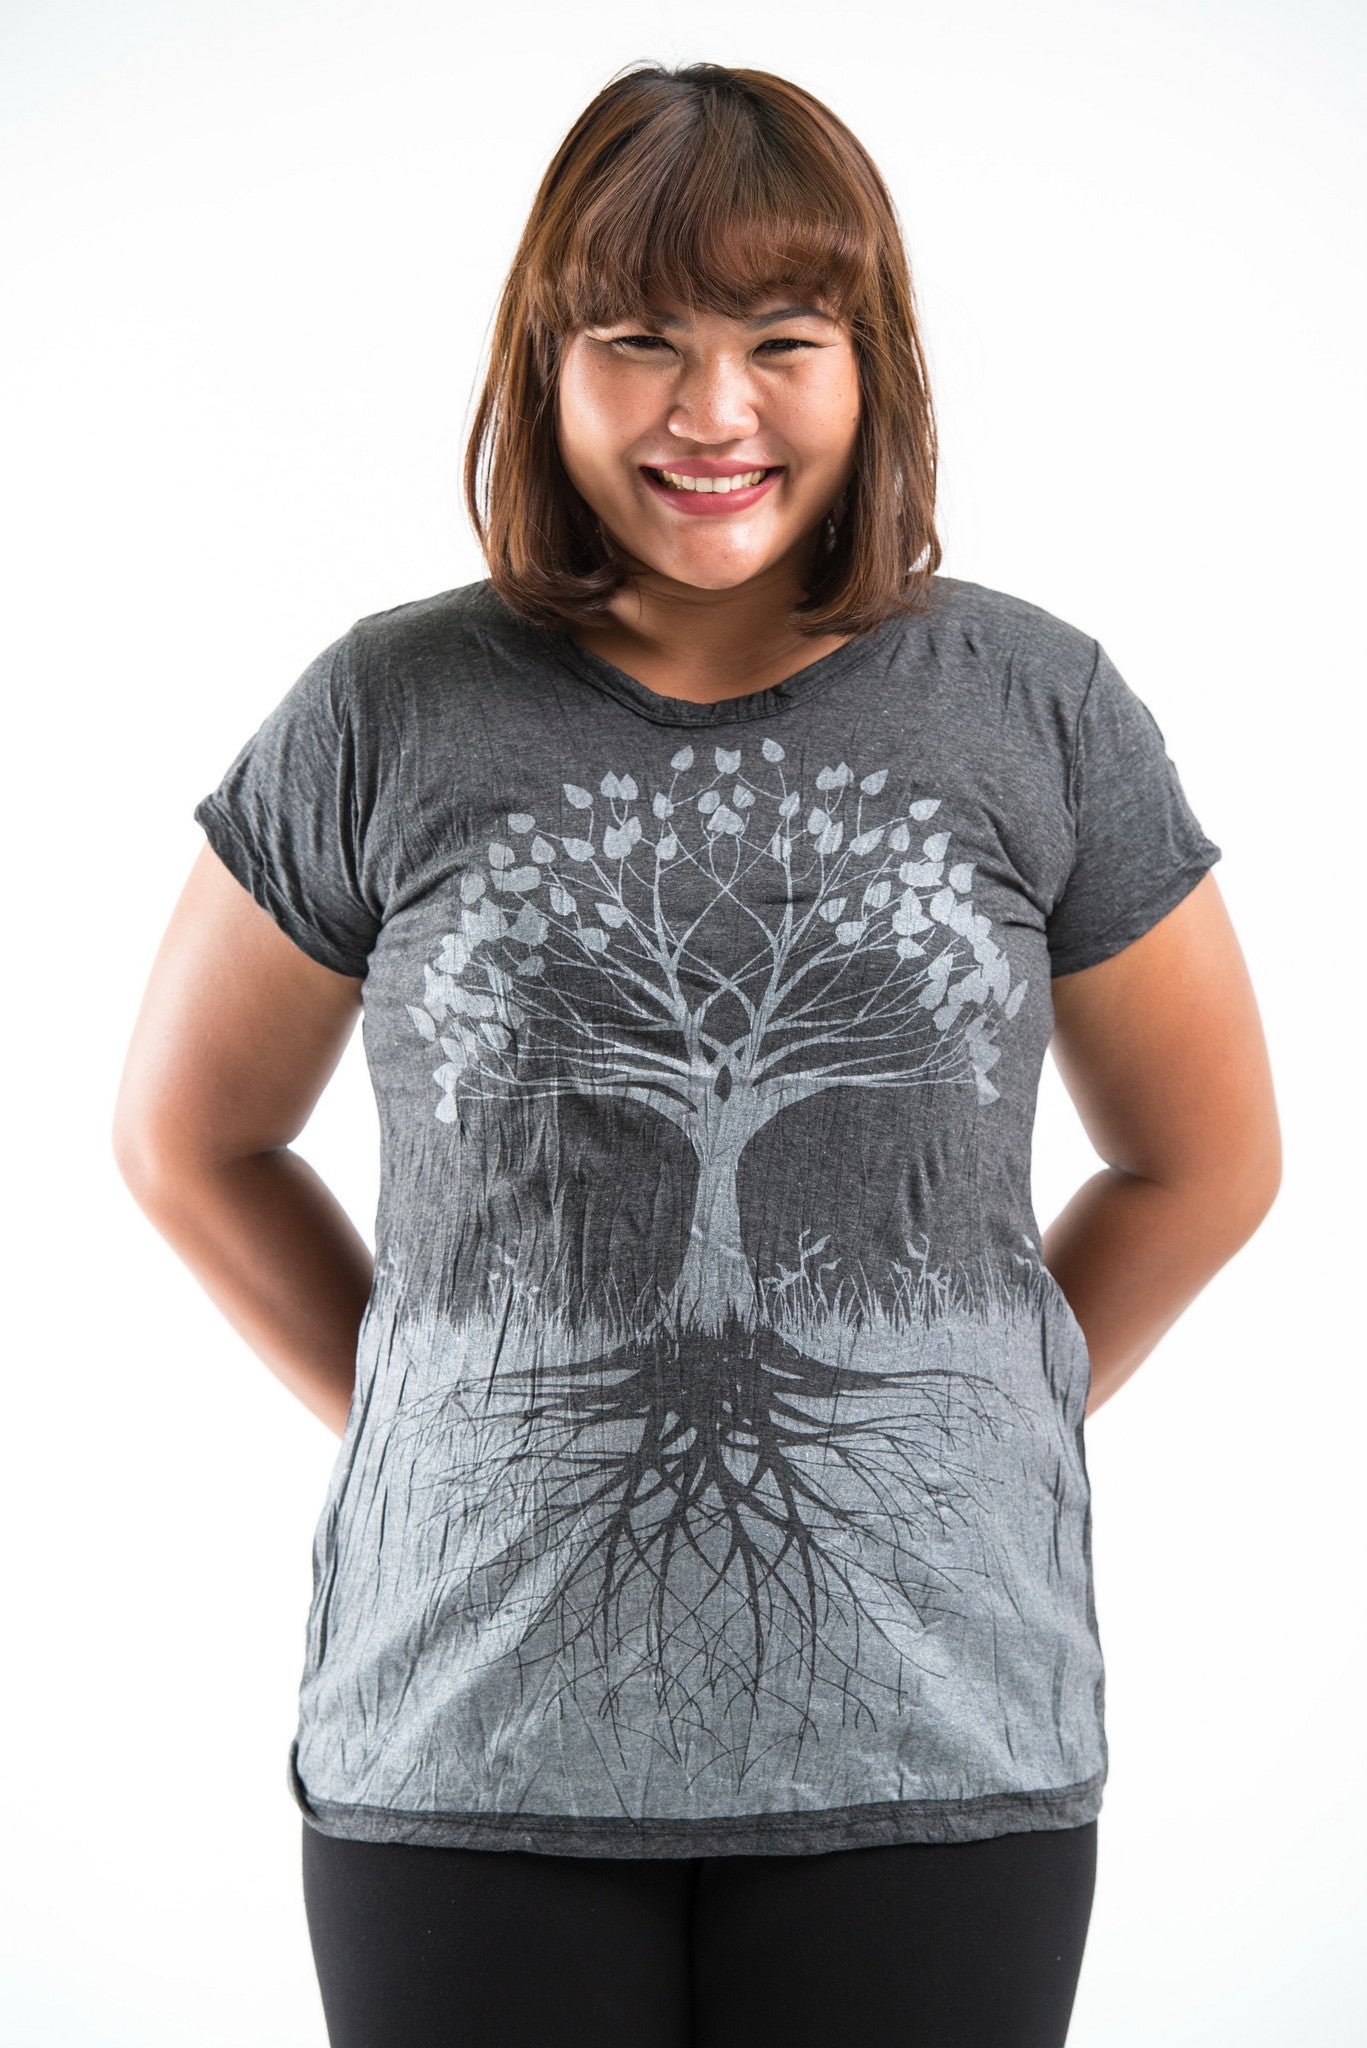 Plus Size Sure Design Women's Tree of Life T-Shirt Silver on Black – Sure  Design Wholesale